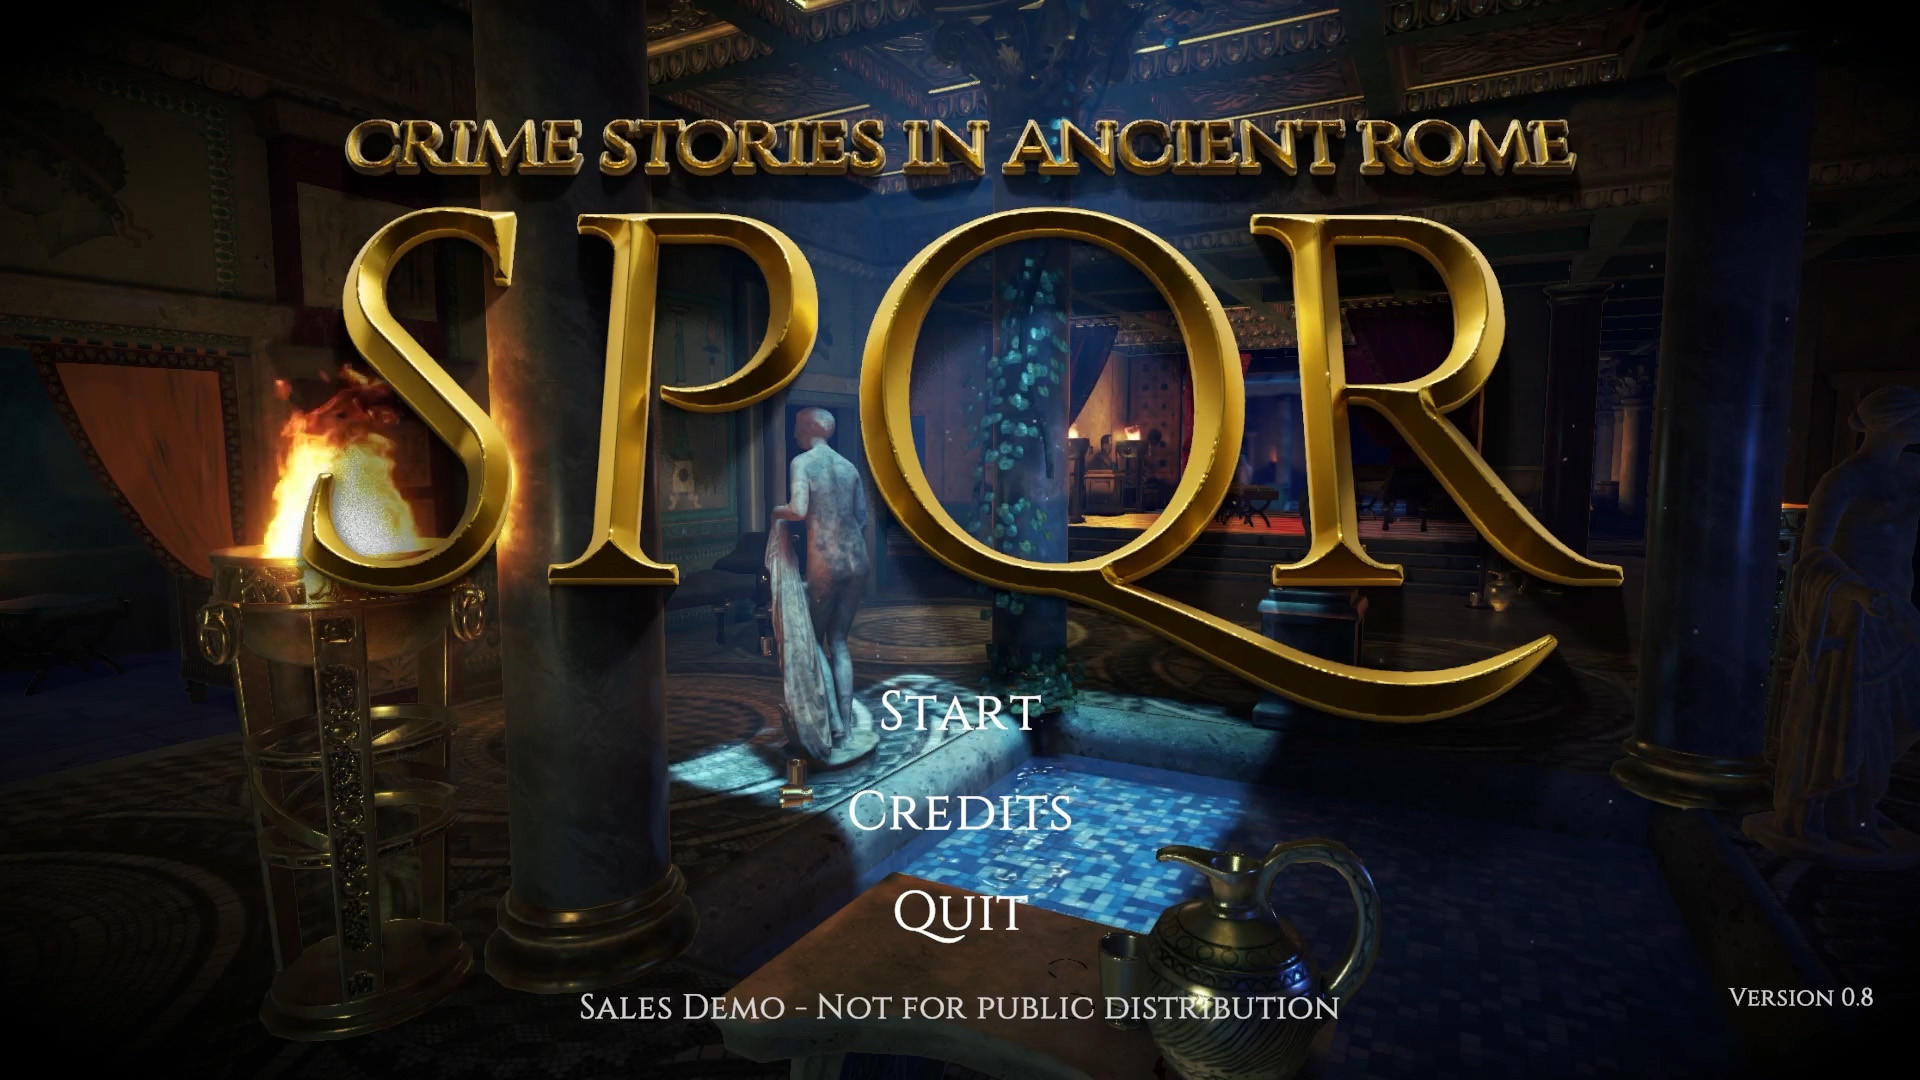 Screenshot 1 of SPQR - Криминальные истории в Древнем Риме 